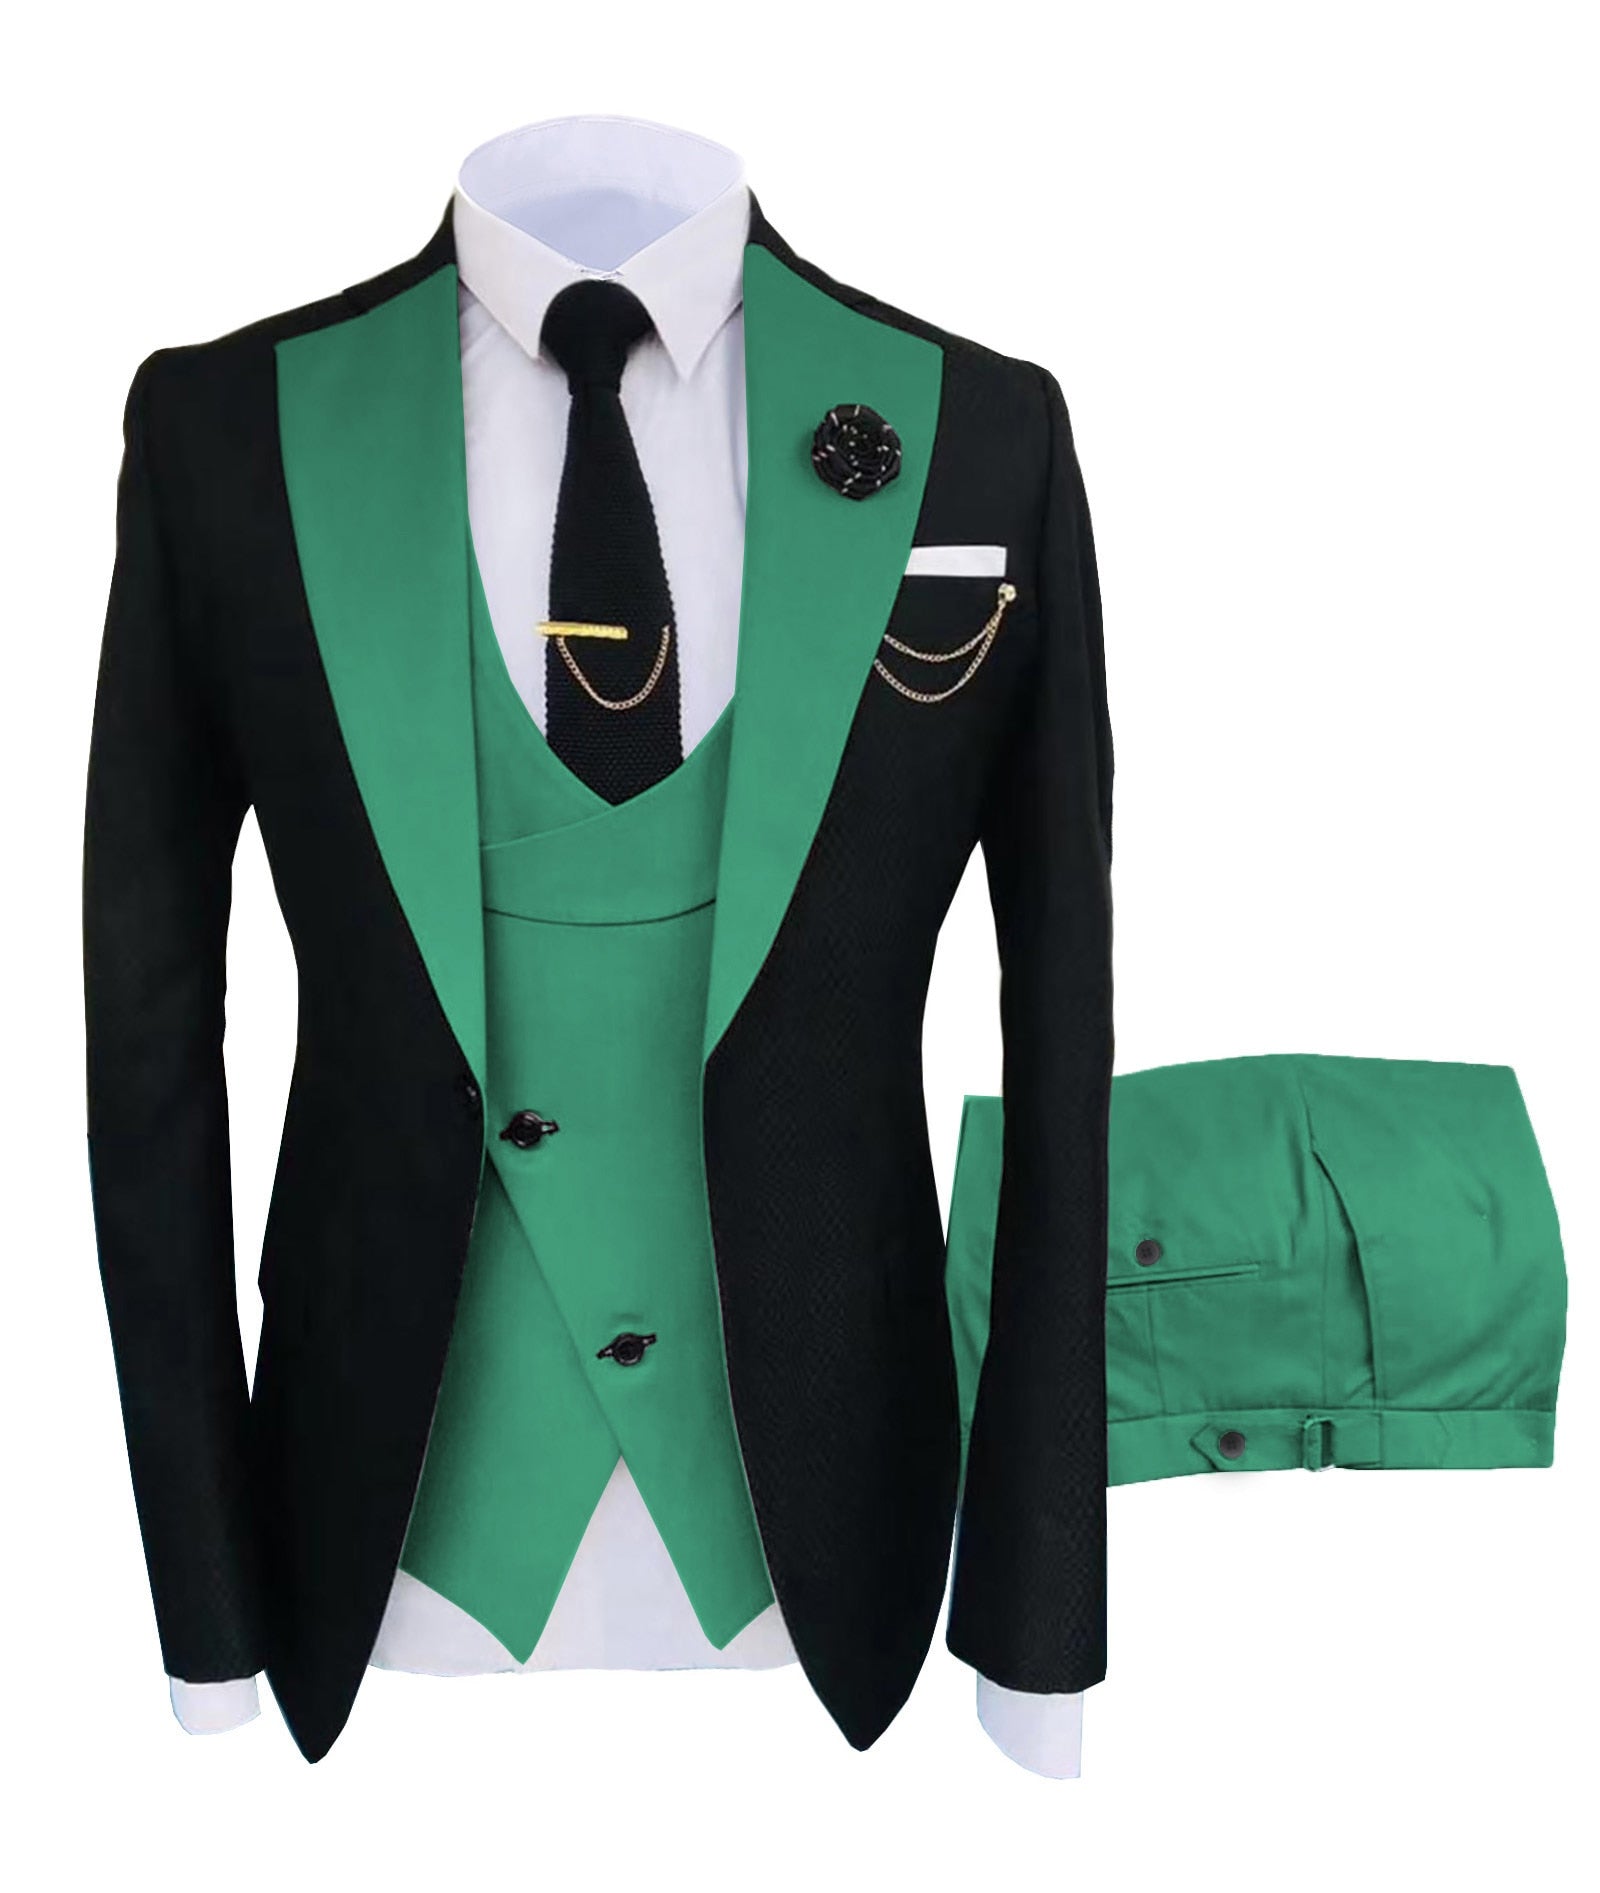 KENTON SUITS Men's Fashion Formal 3 Piece Tuxedo (Jacket + Vest +